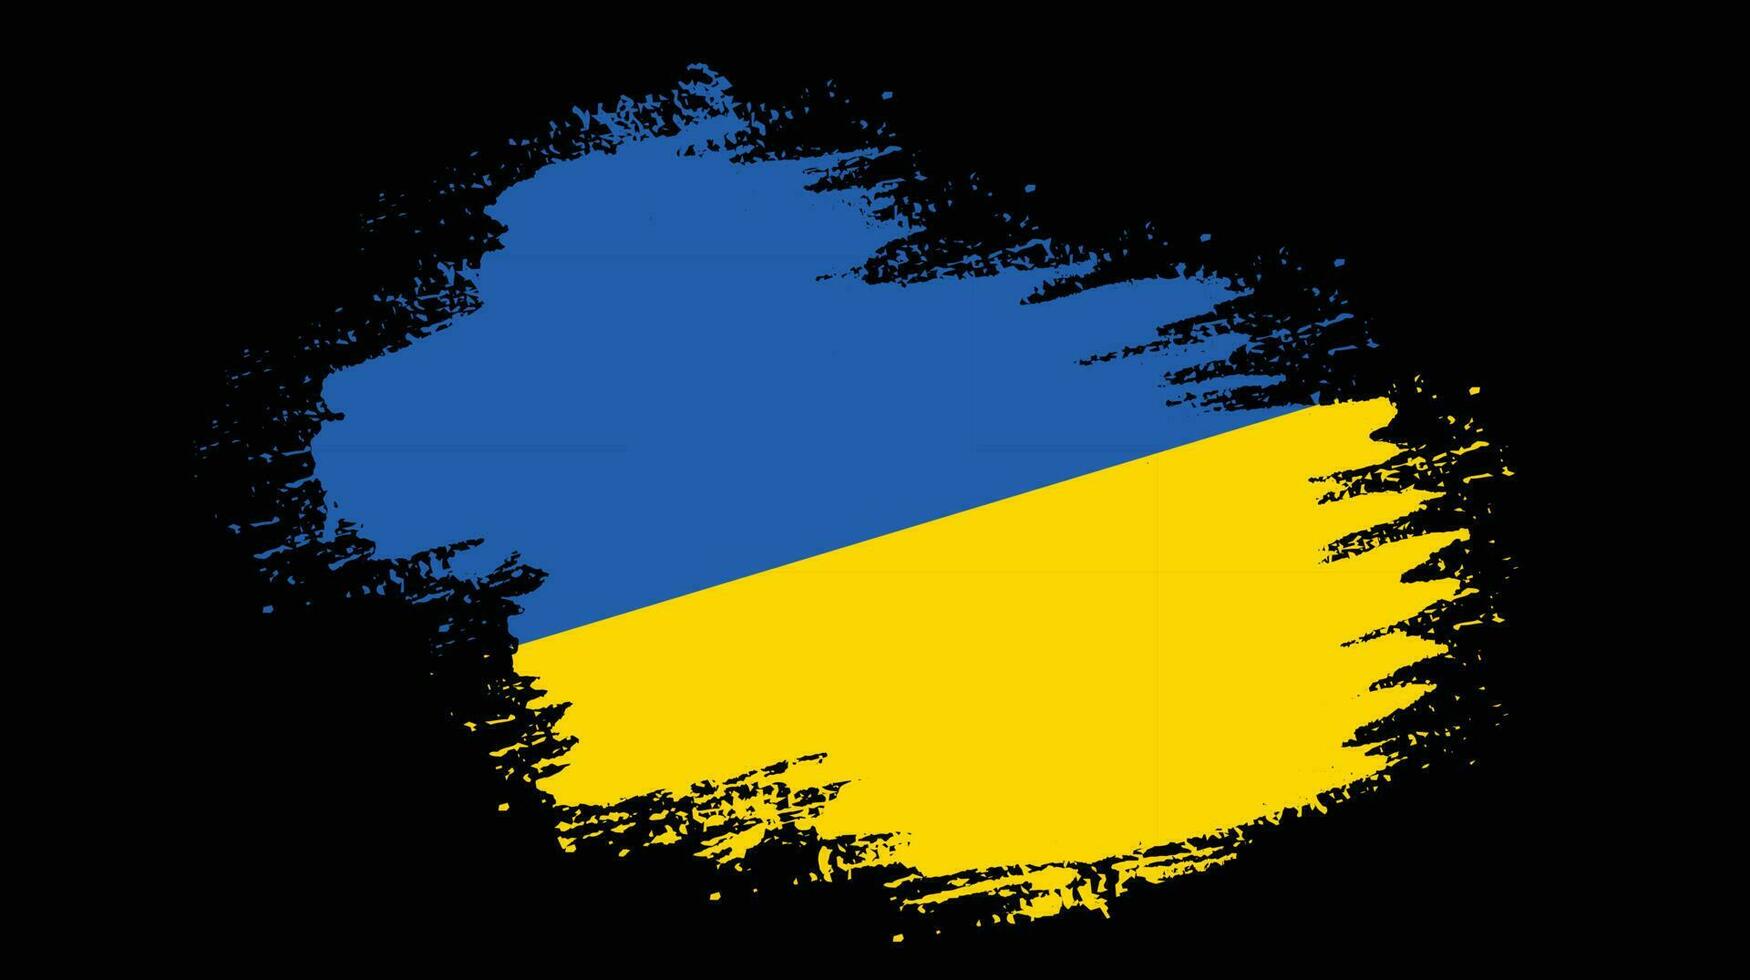 Ukraine grunge texture flag vector